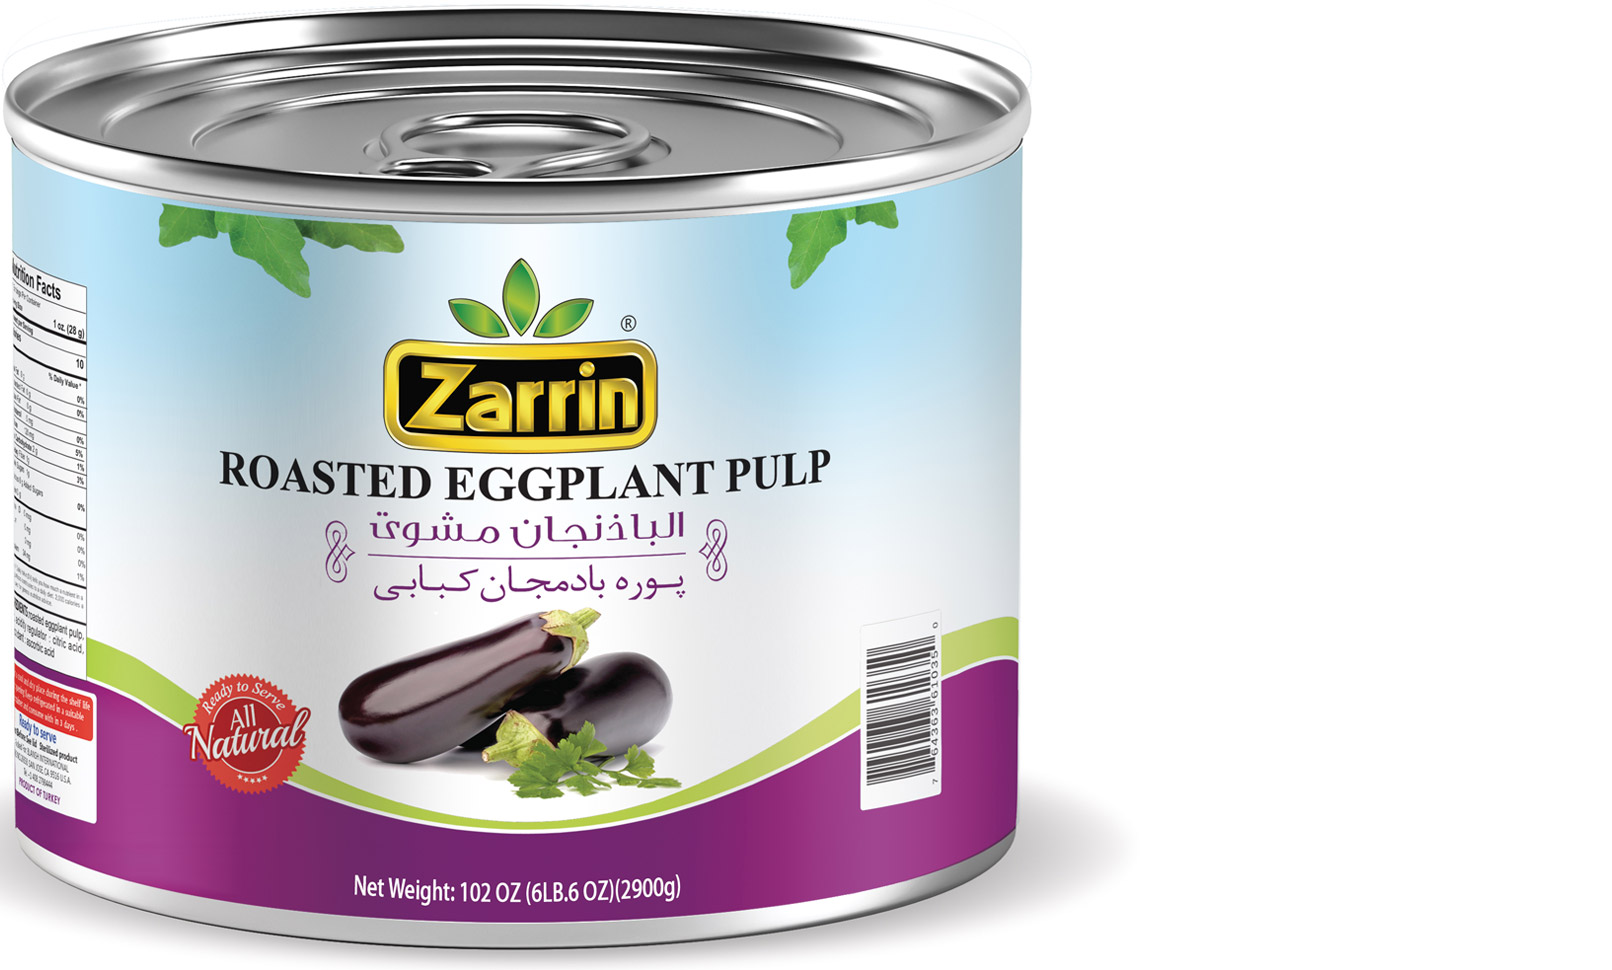 Zarrin roasted eggplant in 102 oz tin can.